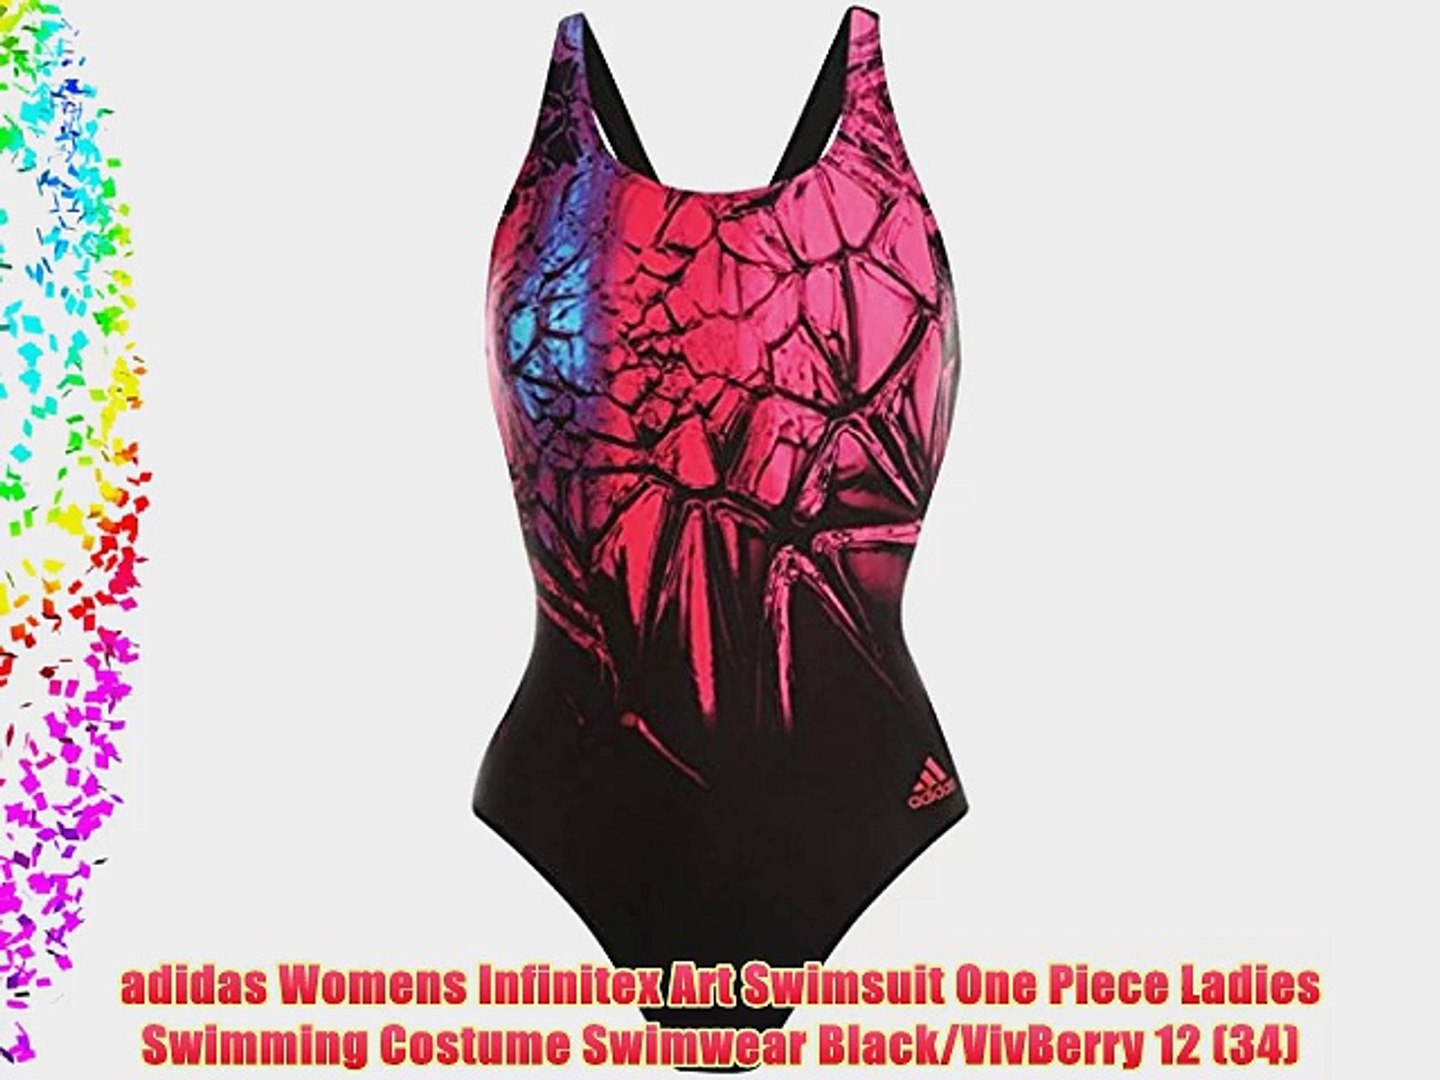 adidas ladies swimming costume